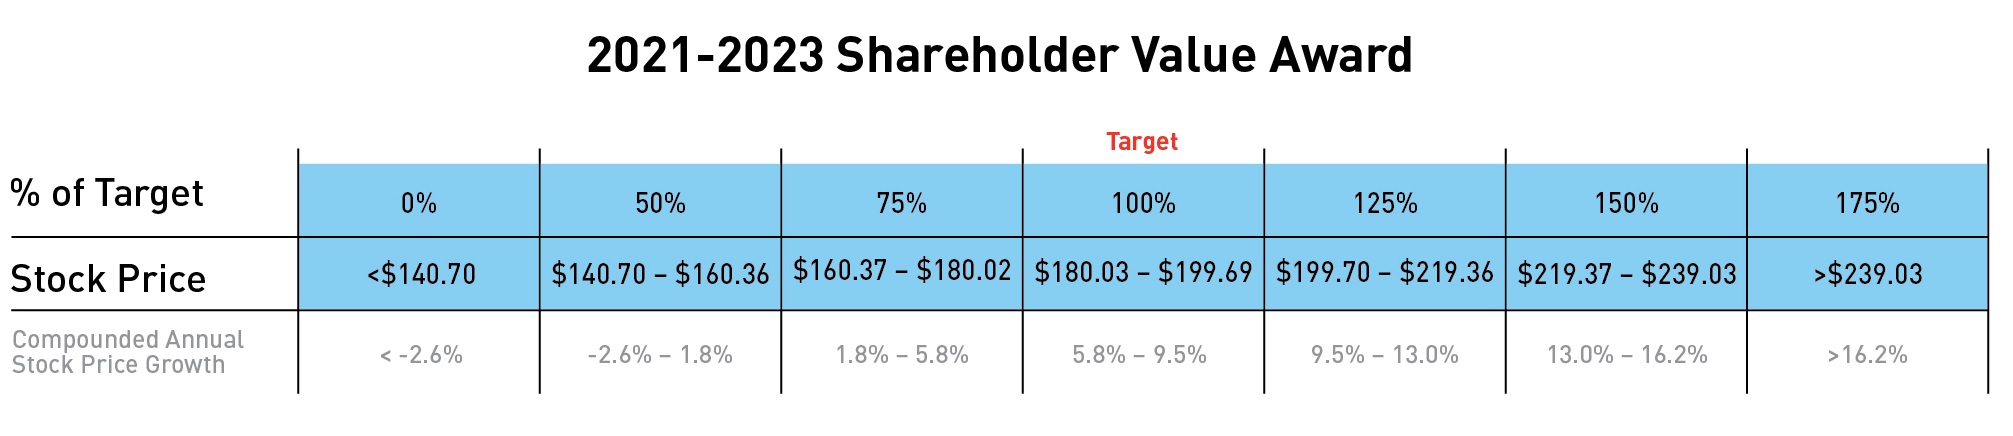 shareholdervalueaward48a.jpg